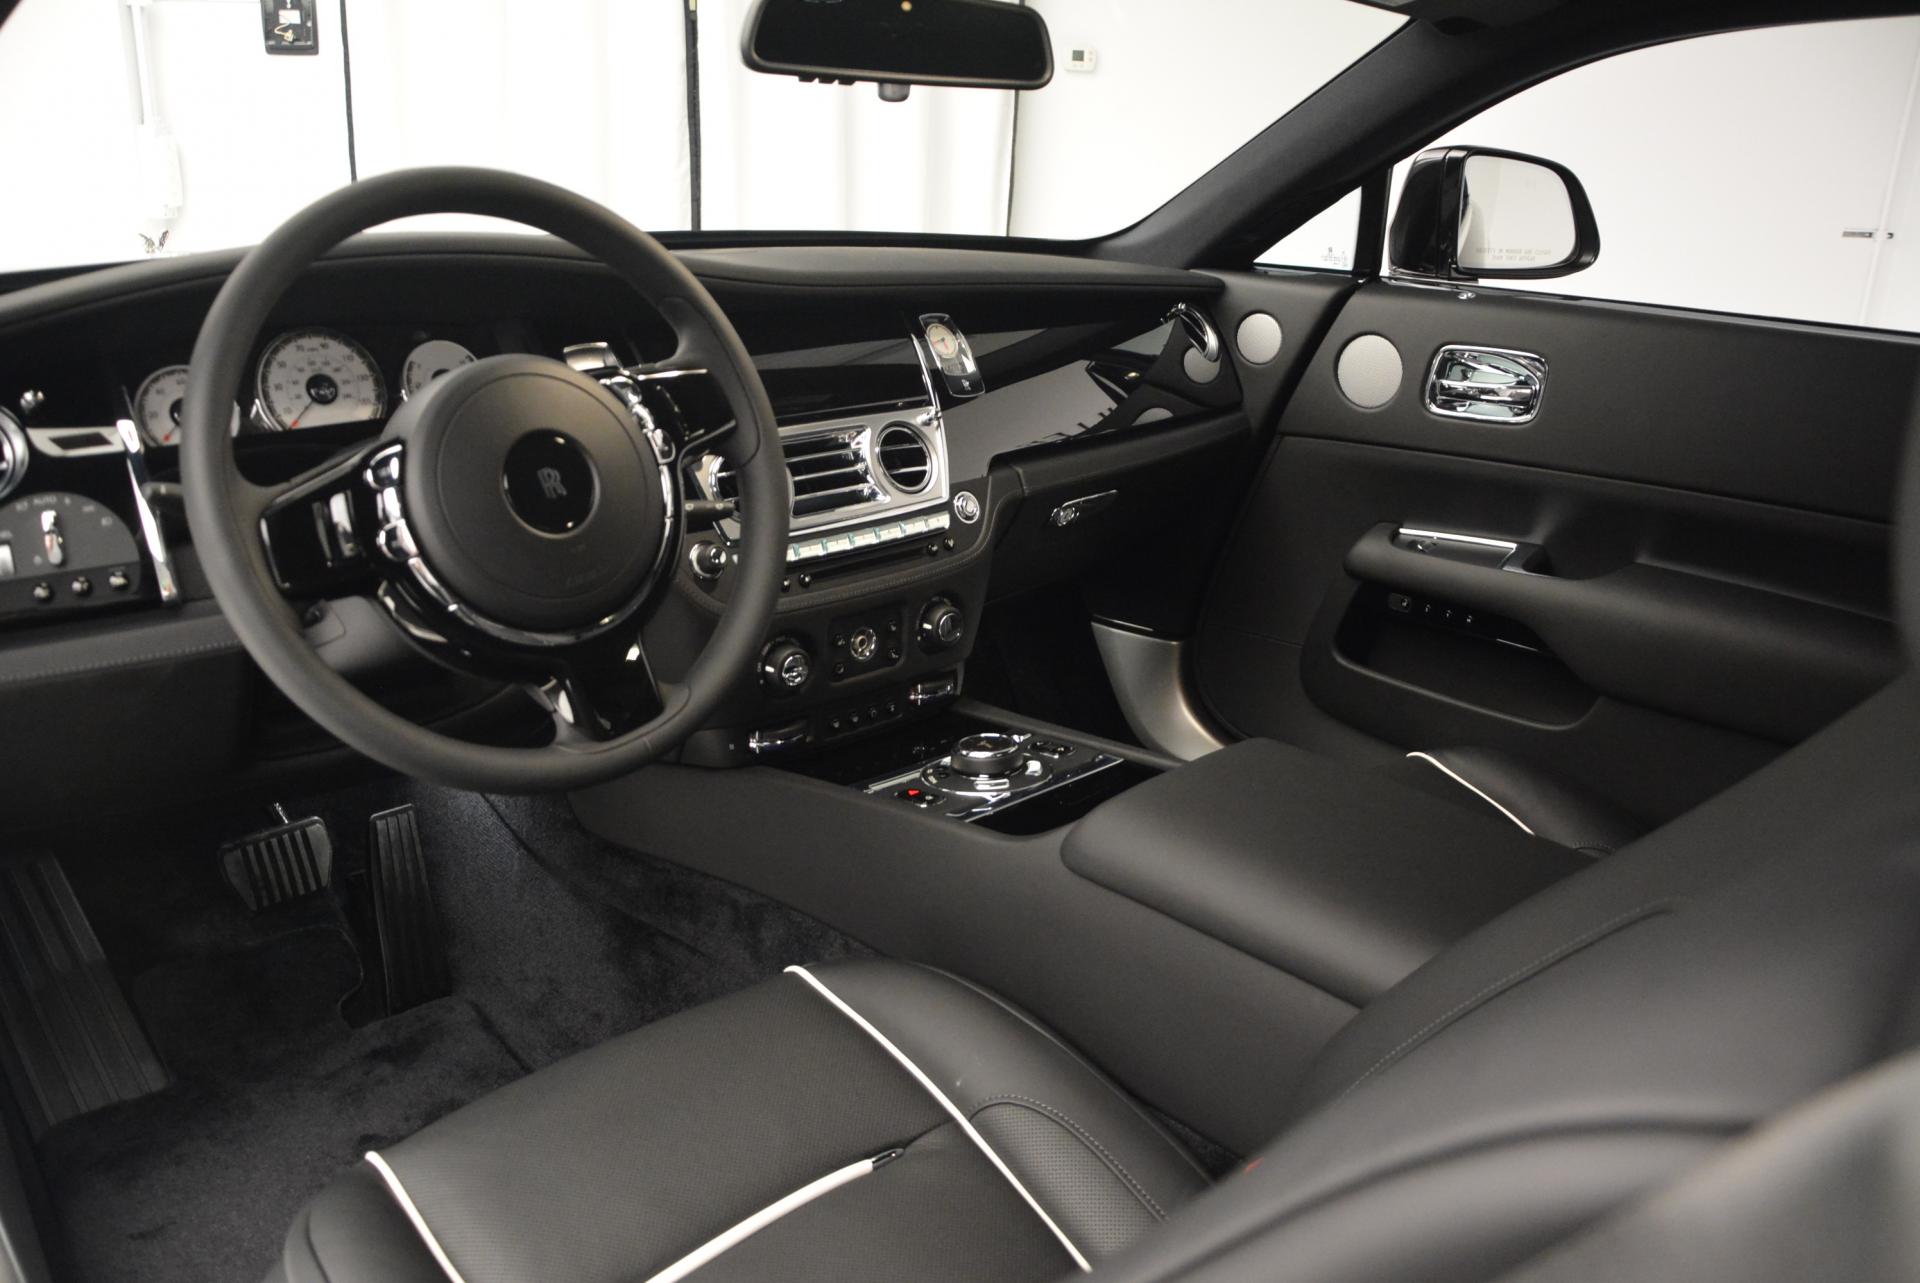 New 2016 Rolls Royce Wraith